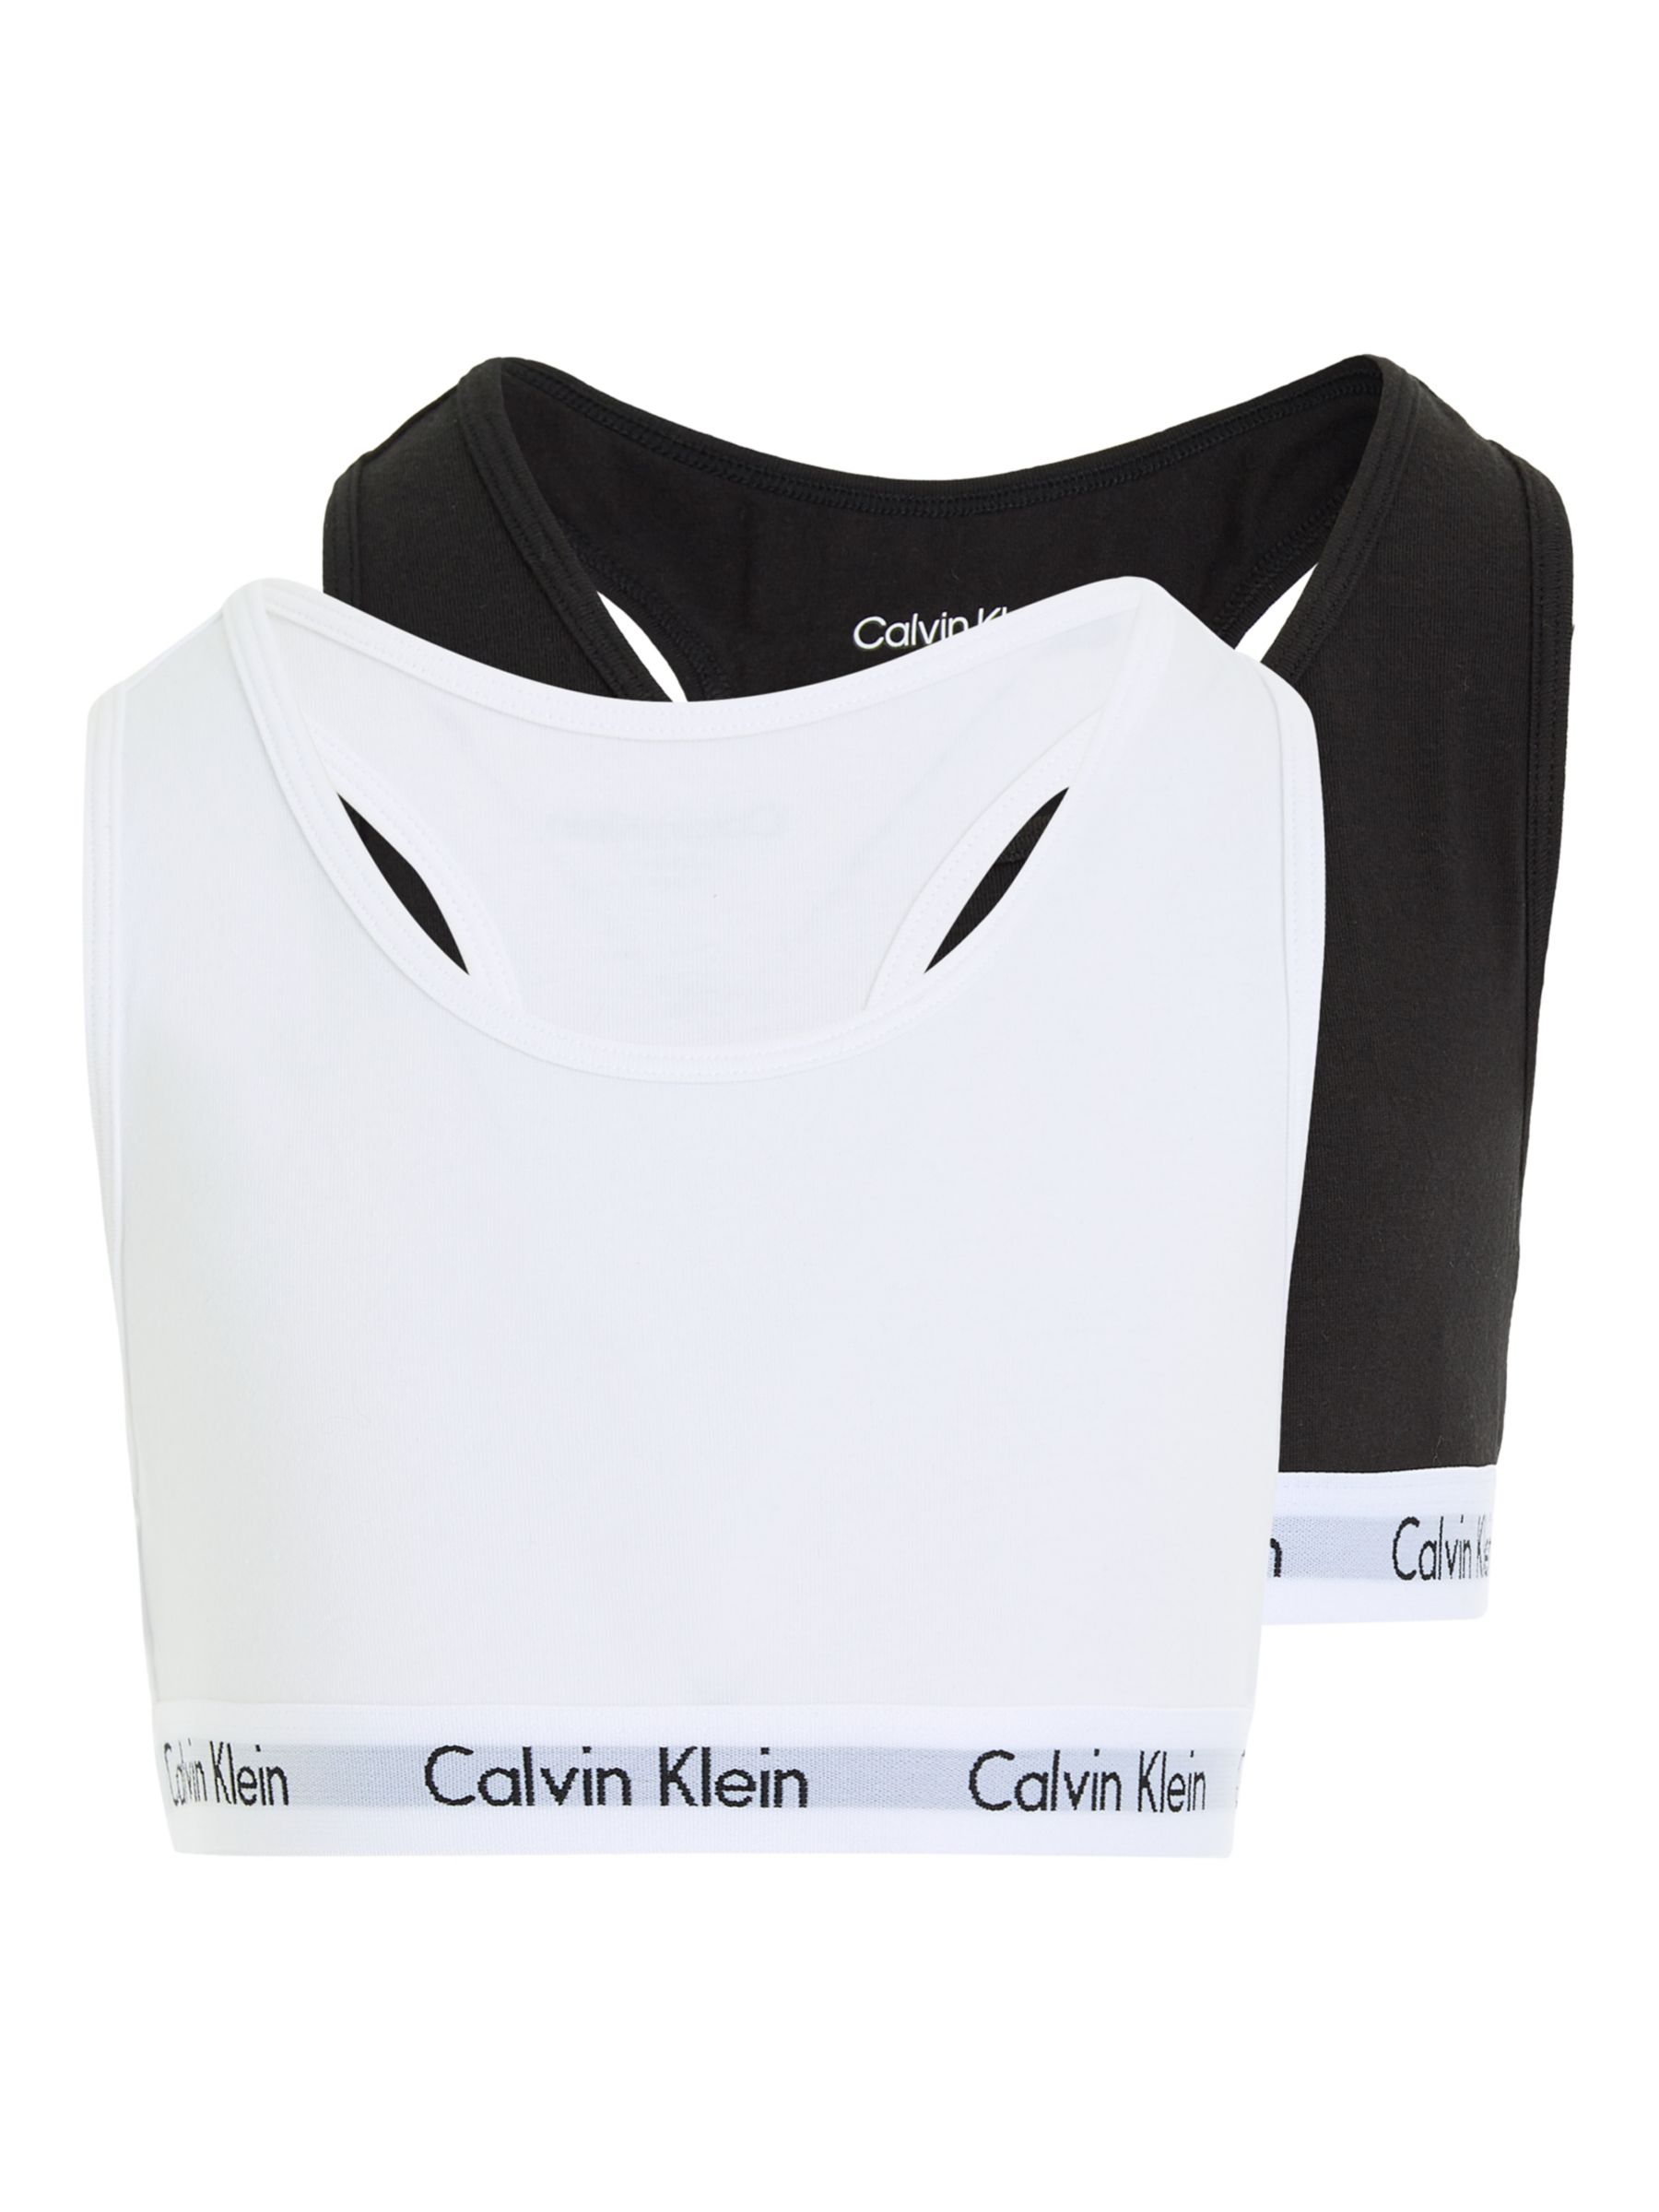 Calvin Klein Kids' Bralette, Pack of 2, Black/White, 8-10 years